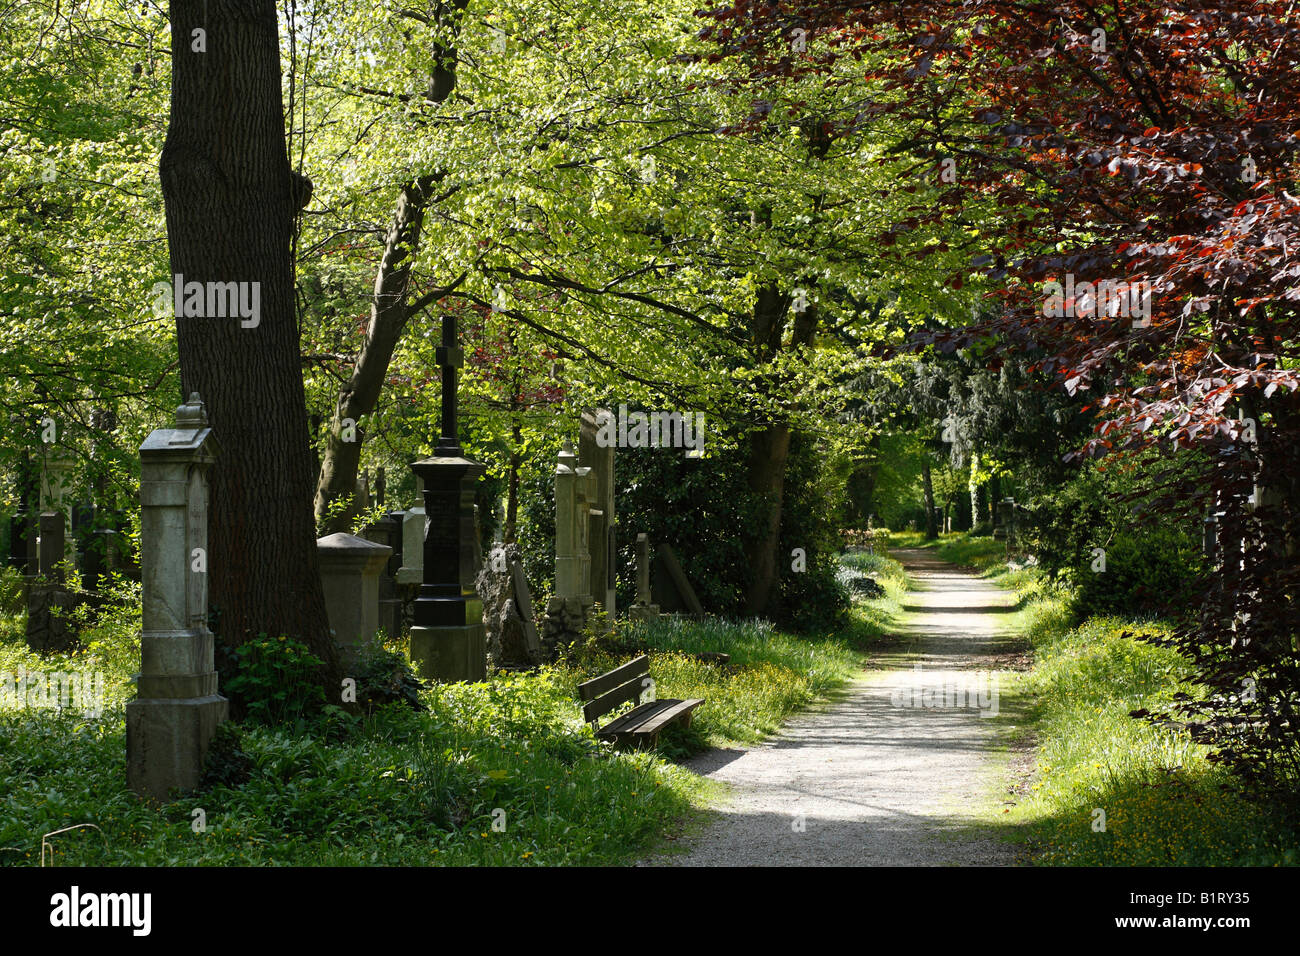 Alter Suedlicher Friedhof, Old Southern Cemetery, Isarvorstadt, Munich, Bavaria, Germany, Europe Stock Photo